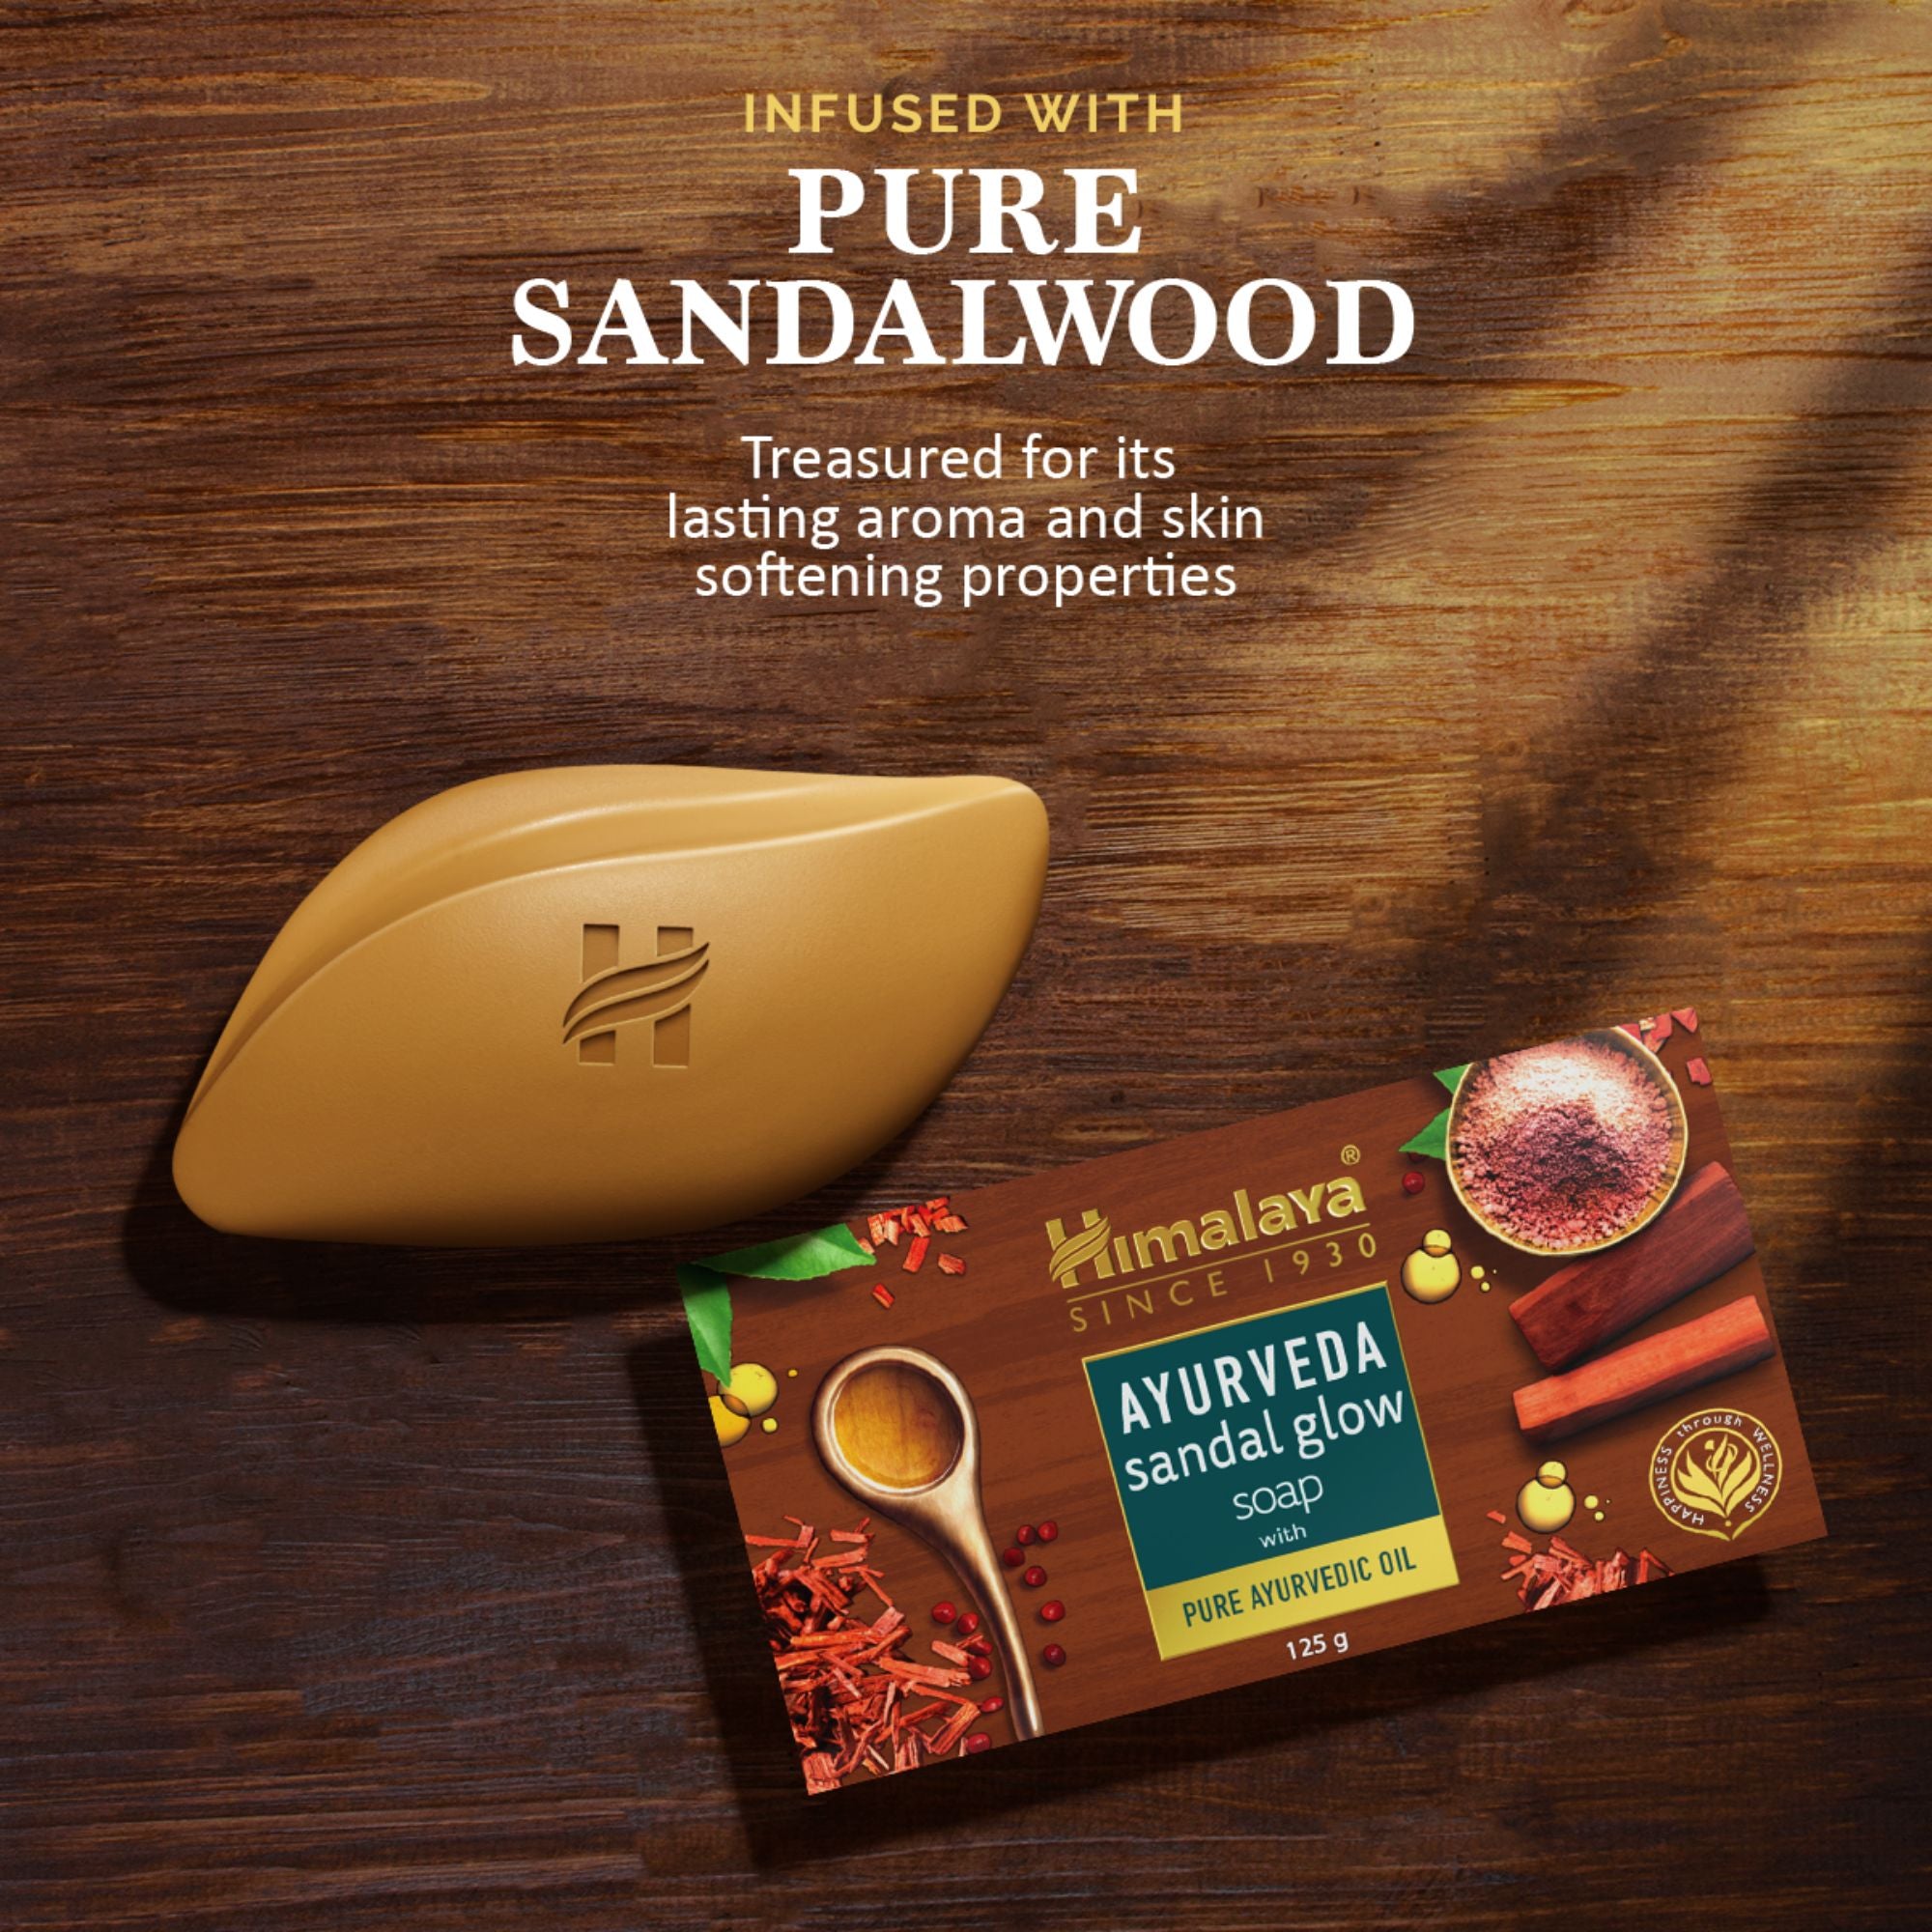 Buy Himalaya Ayurveda Sandal Glow Soap - Infused with Pure Sandalwood